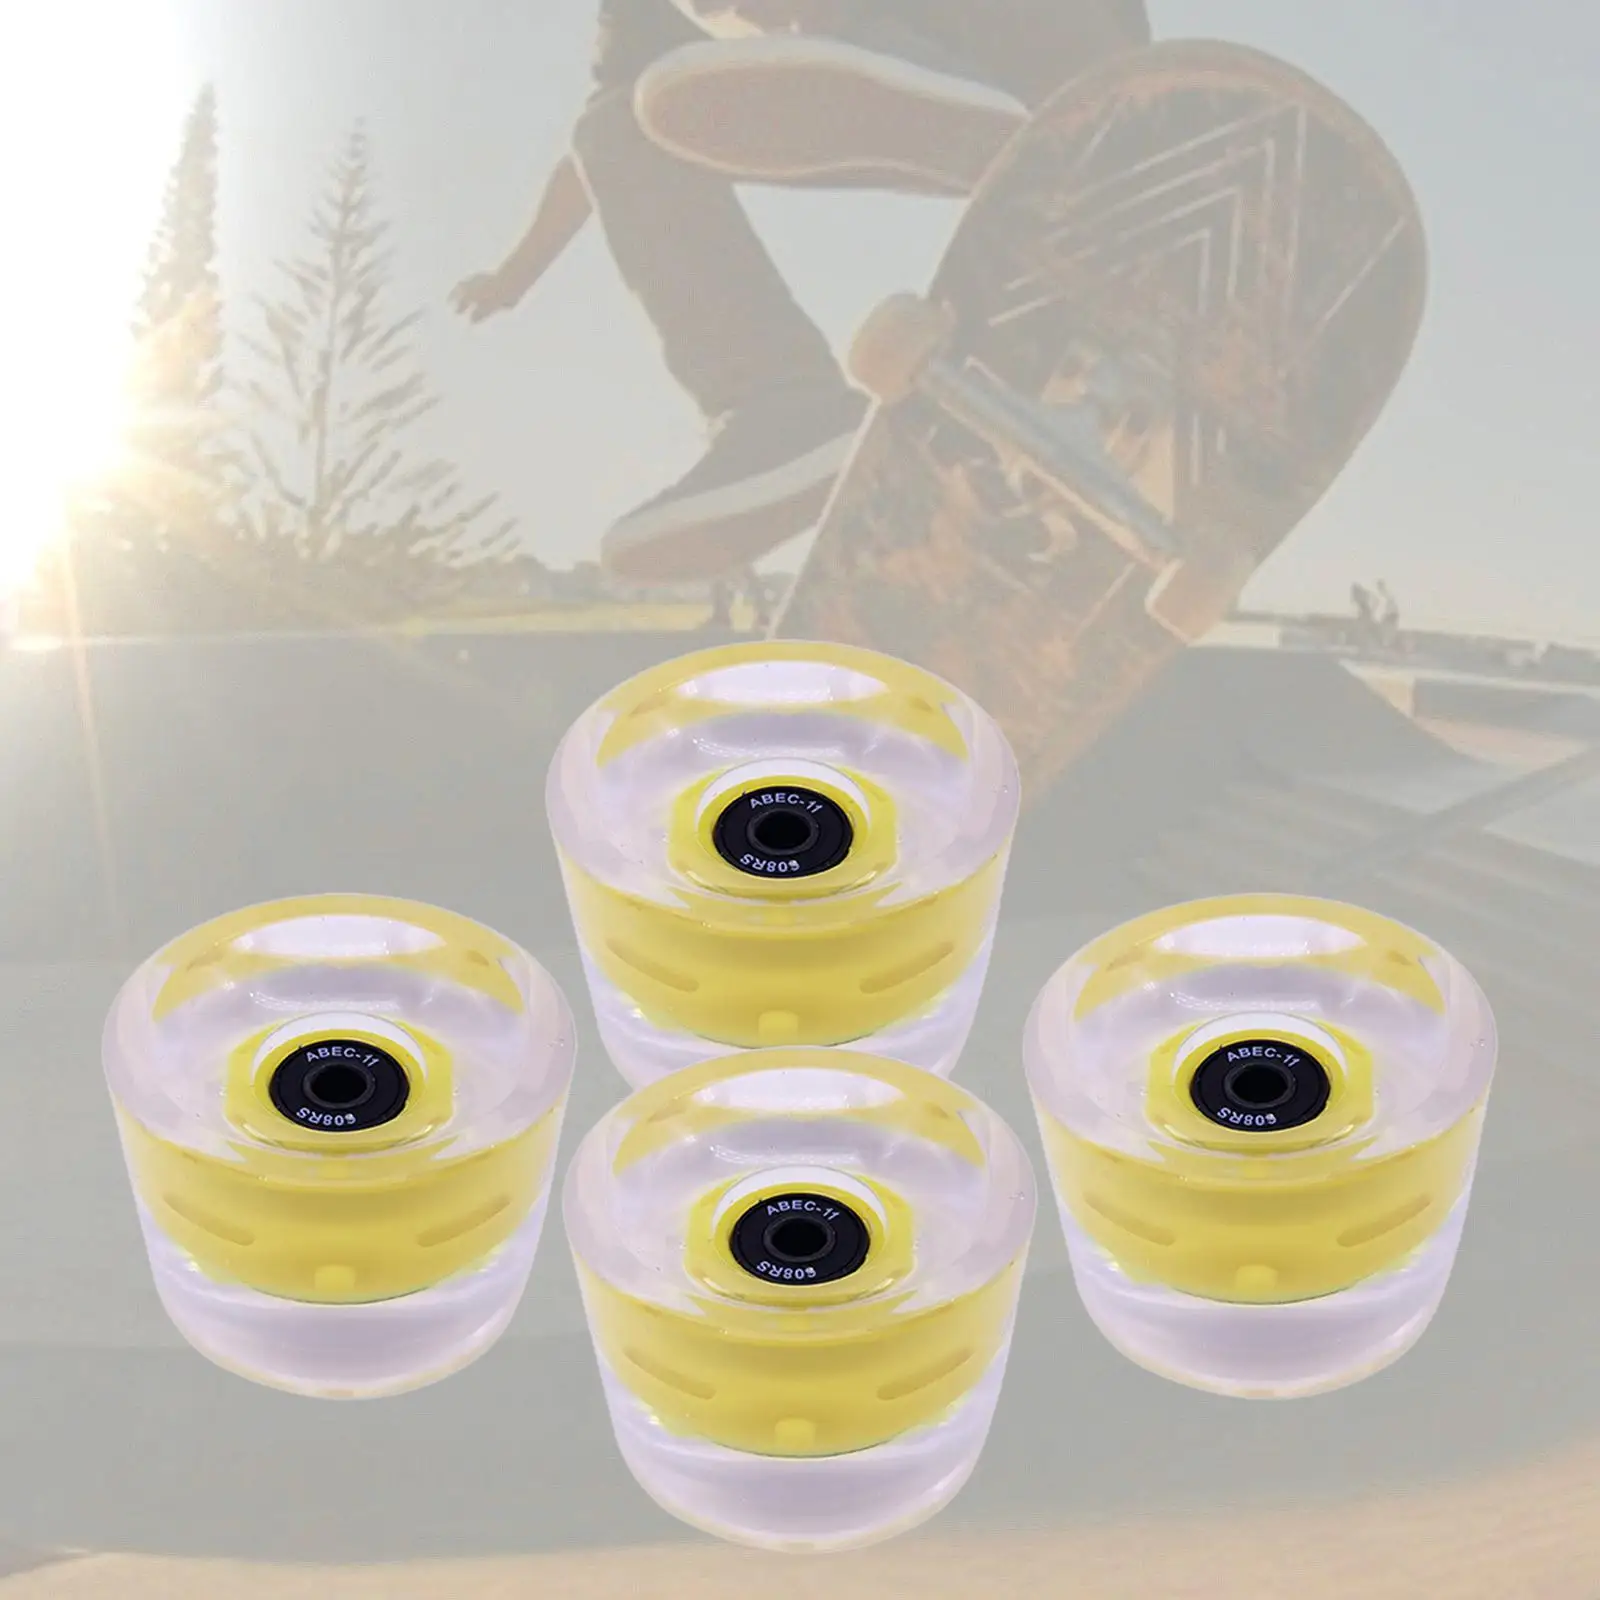 70mm Skateboard Longboard Wheel 80A (Set of 4)